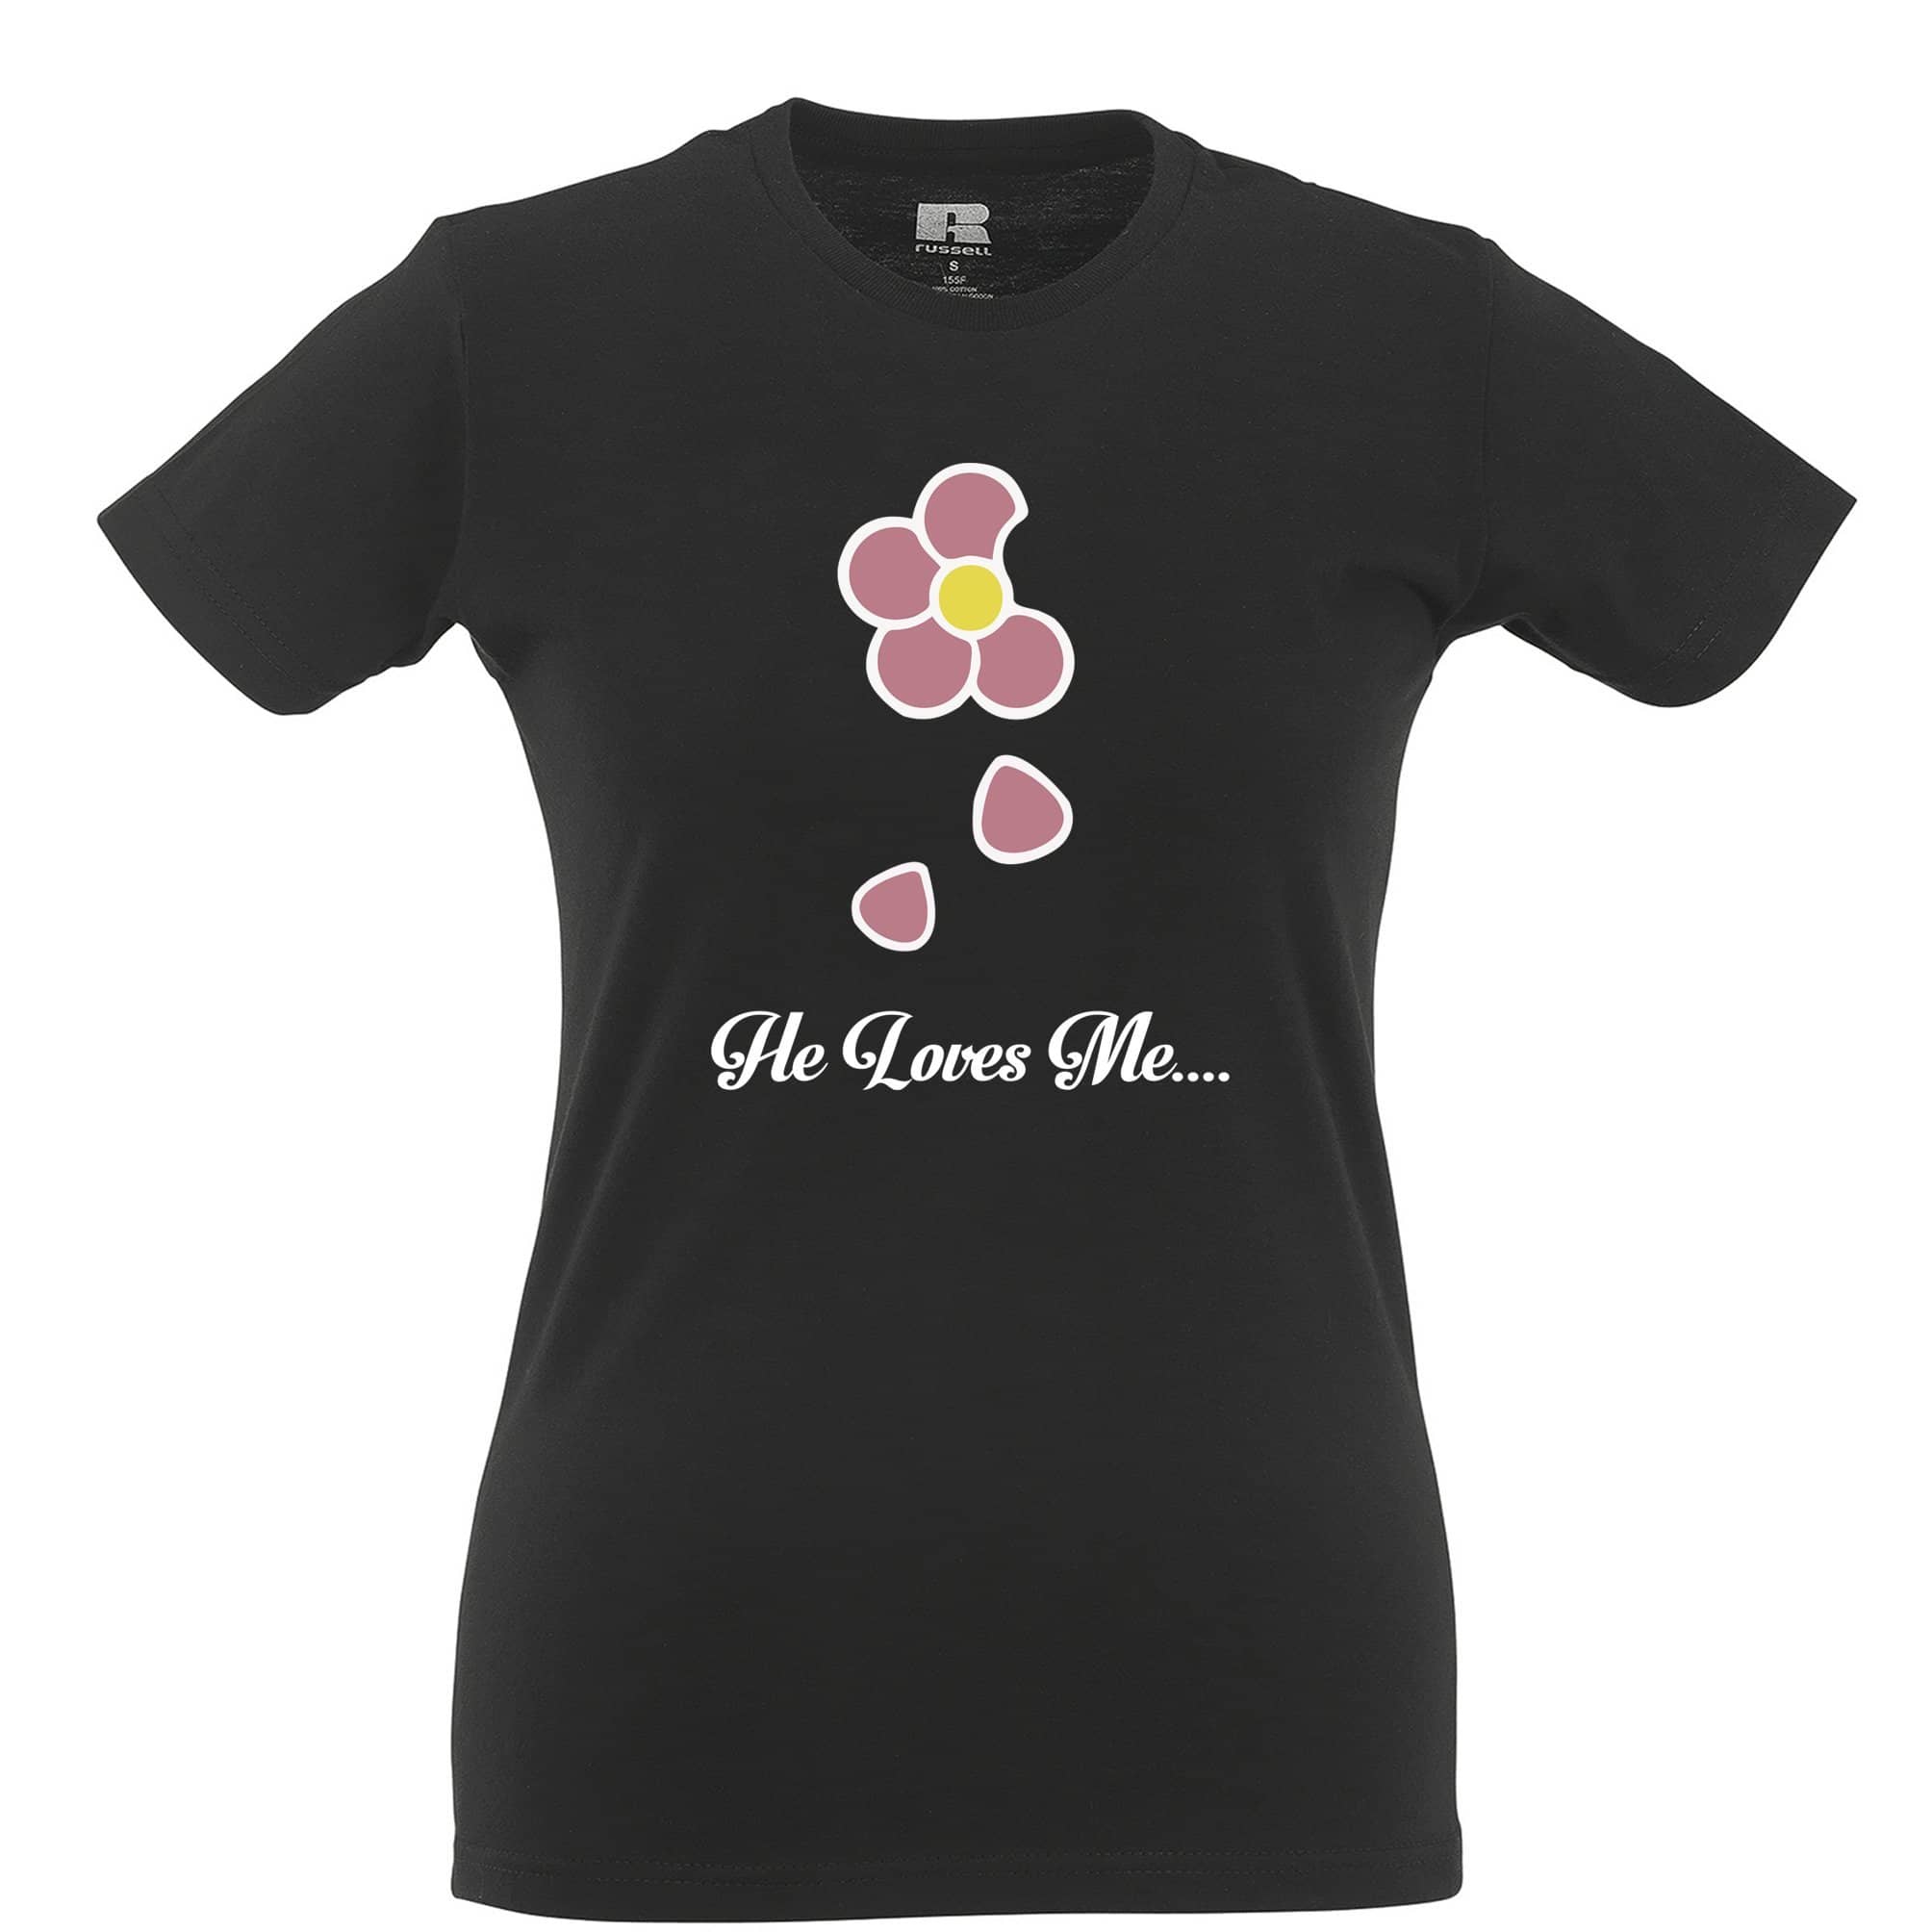 Cute Summer Womens T Shirt He Loves Me... Flower Slogan